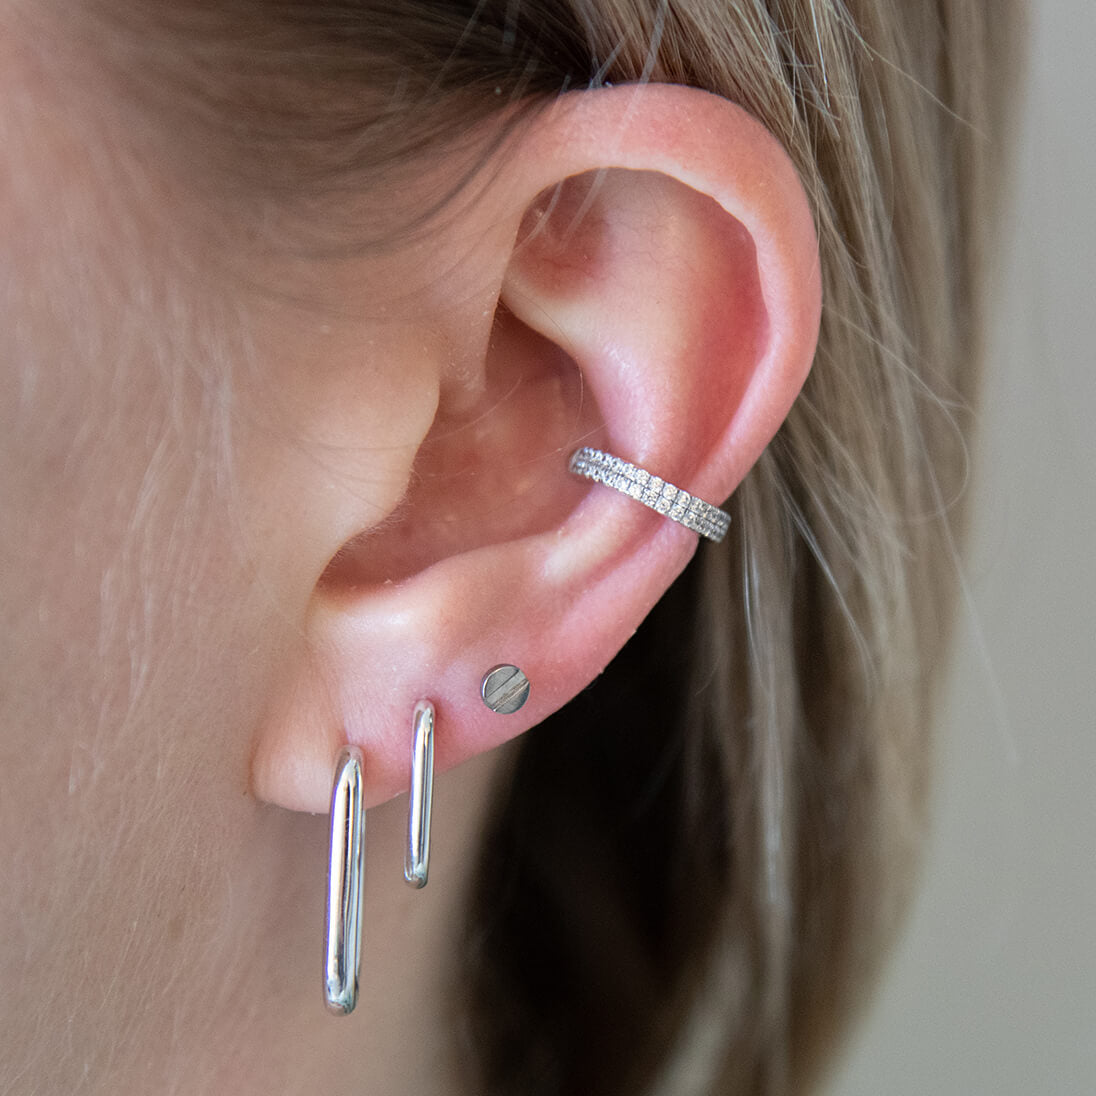 Heart ear piercing labret stud earring 16g flat back titanium internal   Siren Body Jewelry